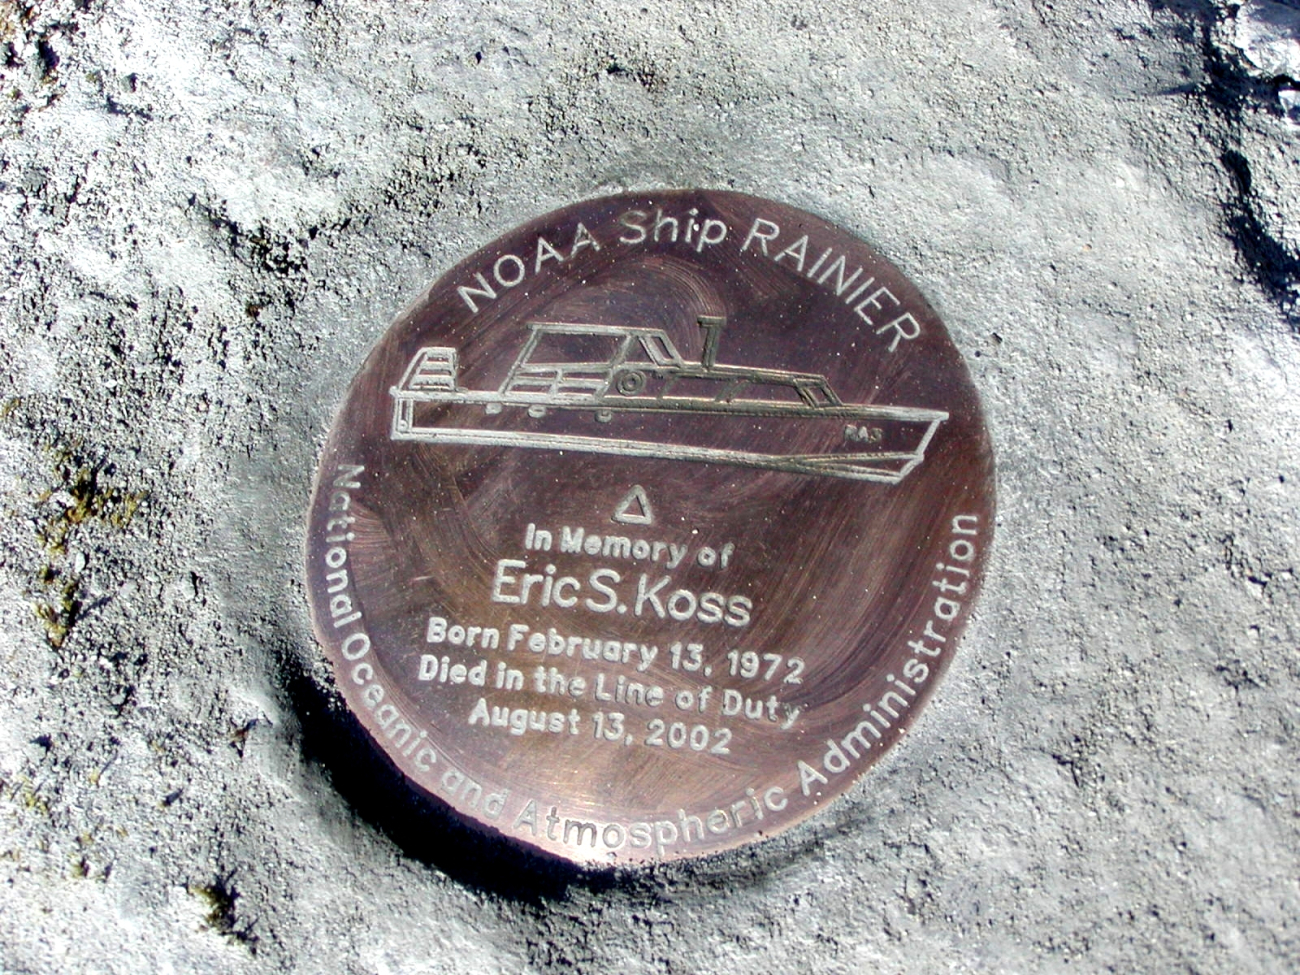 Setting the mark - Memorial to a fallen shipmate - Able Seaman Eric Koss